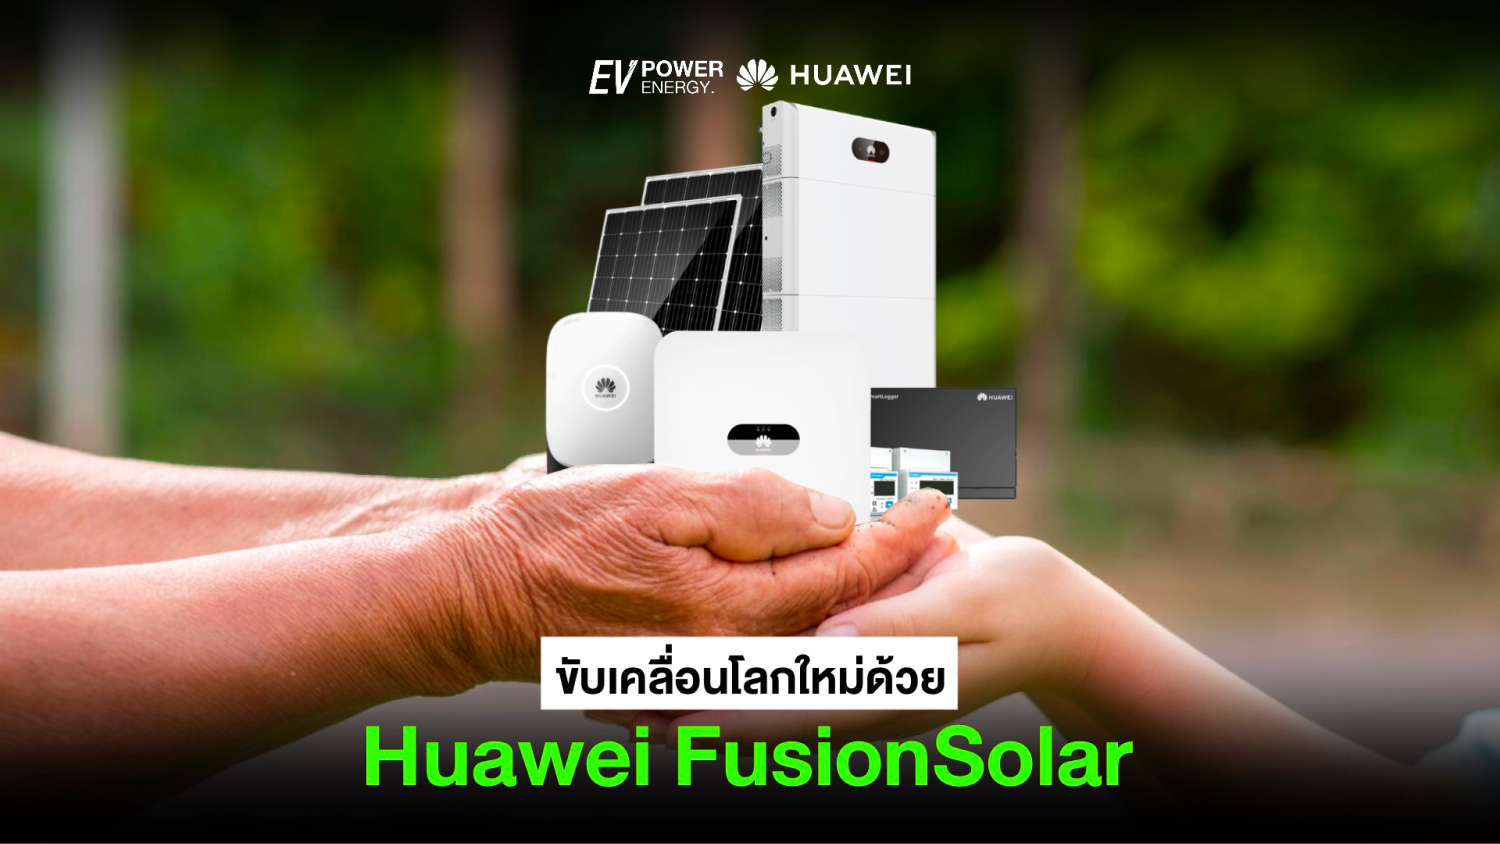 ขับเคลื่อนโลกใหม่ด้วย Huawei FusionSolar